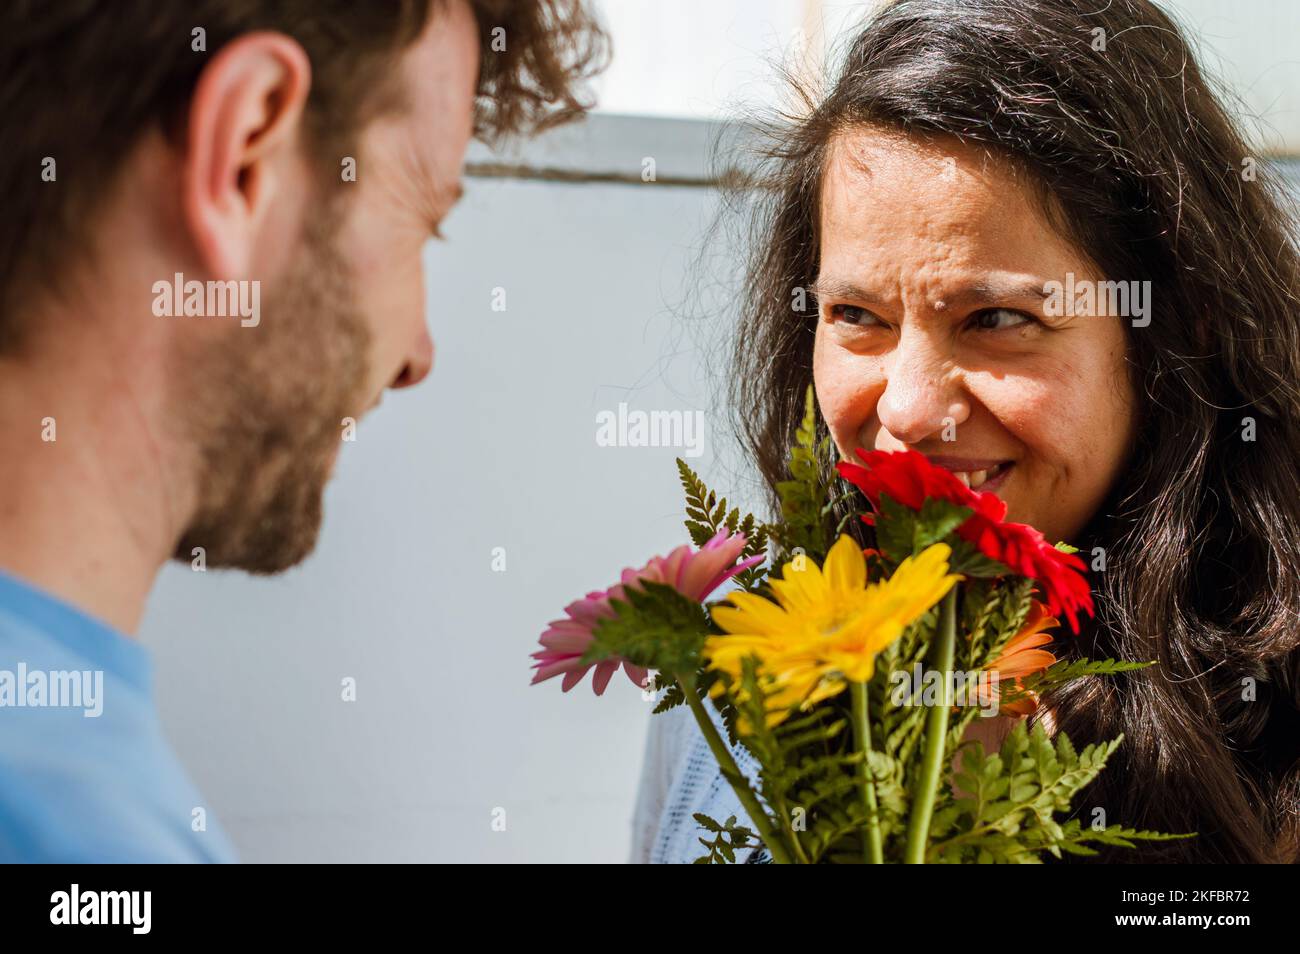 Donna brasiliana adulta a casa, sorridente, vede suo marito che le ha appena dato un bouquet di fiori colorati, celebrando il giorno di San Valentino. Foto Stock